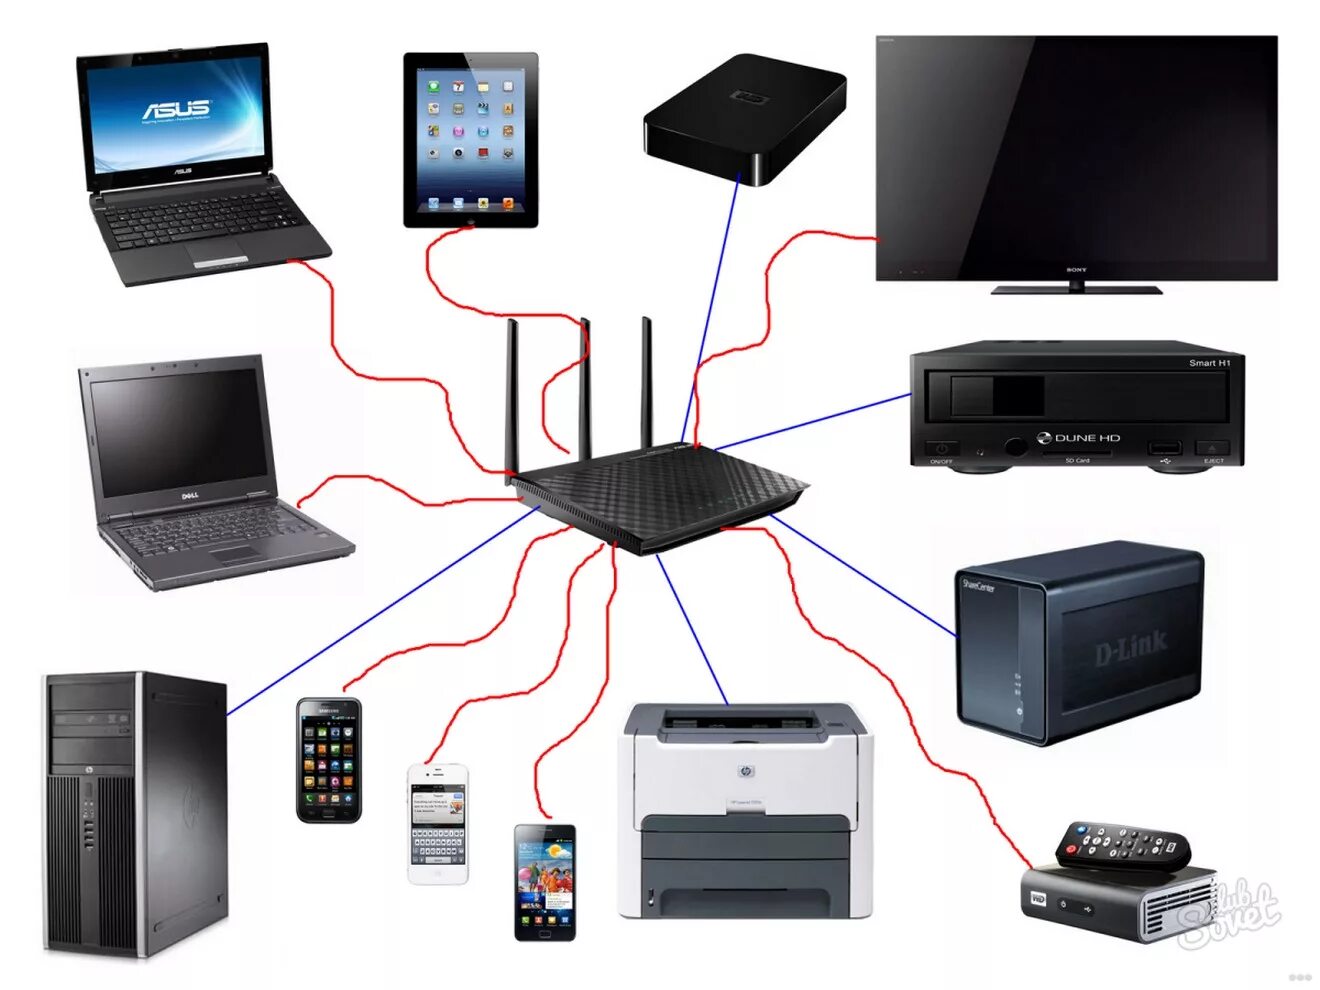 Роутер в домашней локальной сети позволяет. Маршрутизатор Wi Fi сеть ПК. Домашняя локальная сеть через WIFI роутер. 2 ПК,5 ноутбуков, файерволл, Wi-Fi роутер, сервер сетевая диаграмма. Маршрутизатор для проводной локальной сети.